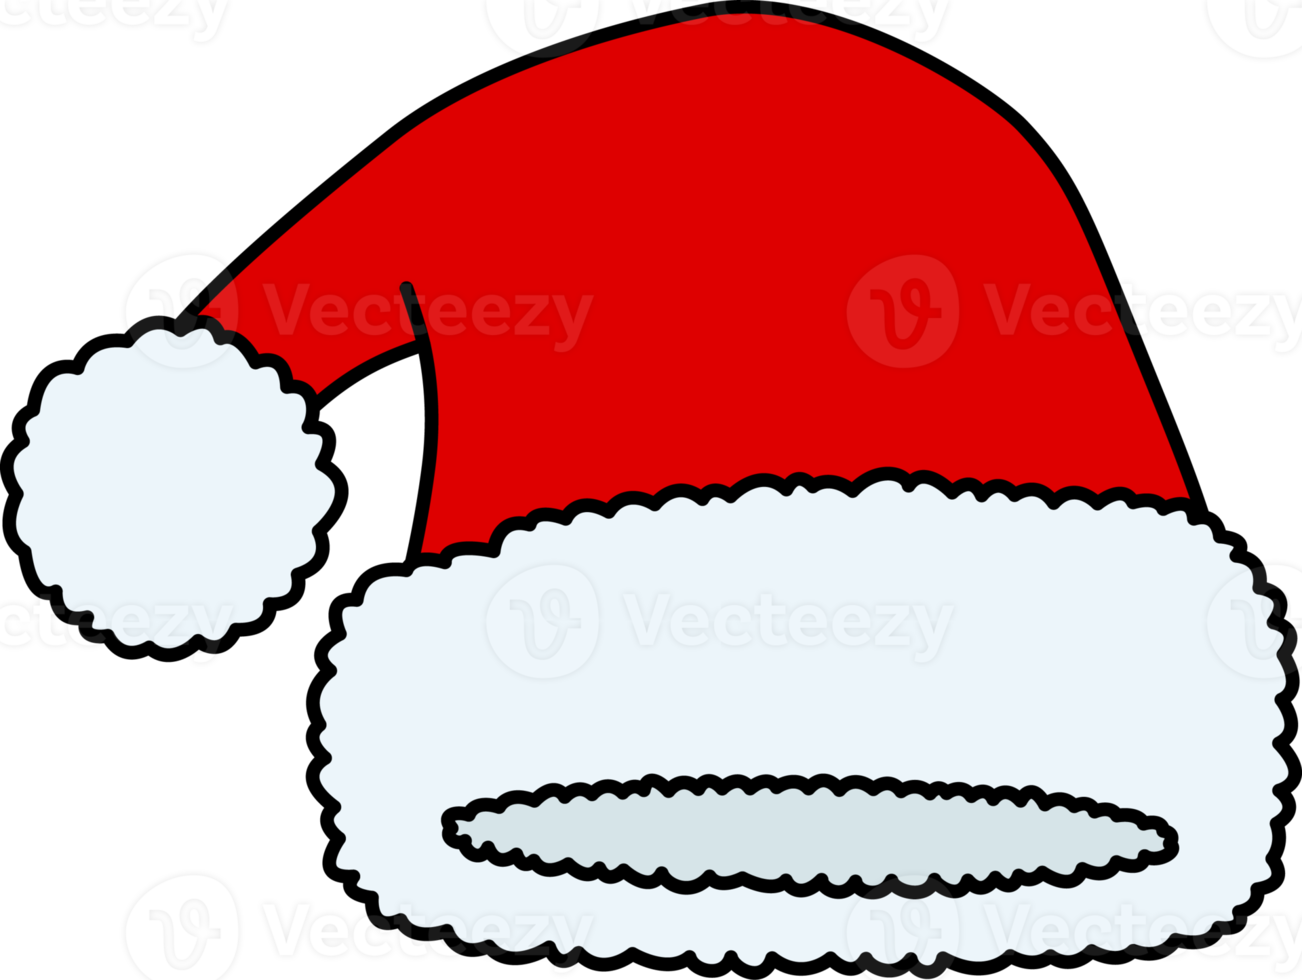 de kerstman claus hoed geïsoleerd, illustratie png